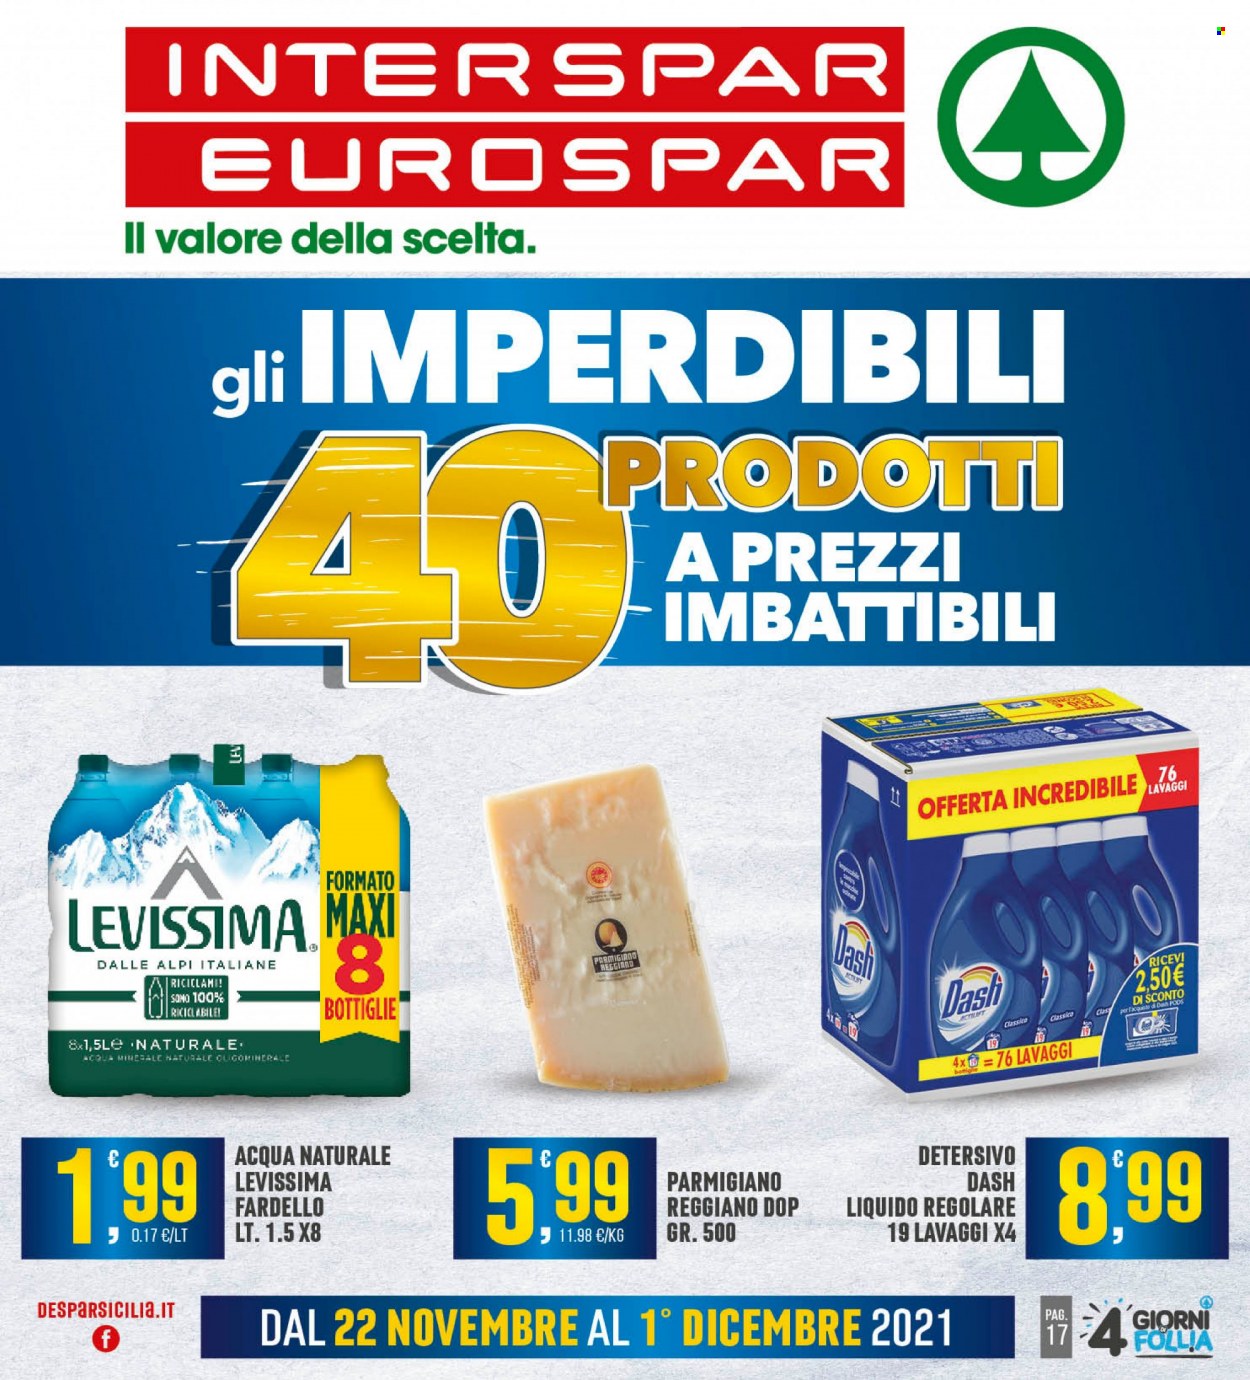 thumbnail - Volantino Eurospar - 22/11/2021 - 1/12/2021 - Prodotti in offerta - formaggio, parmigiano, acqua naturale, Levissima, detersivo, Dash. Pagina 1.